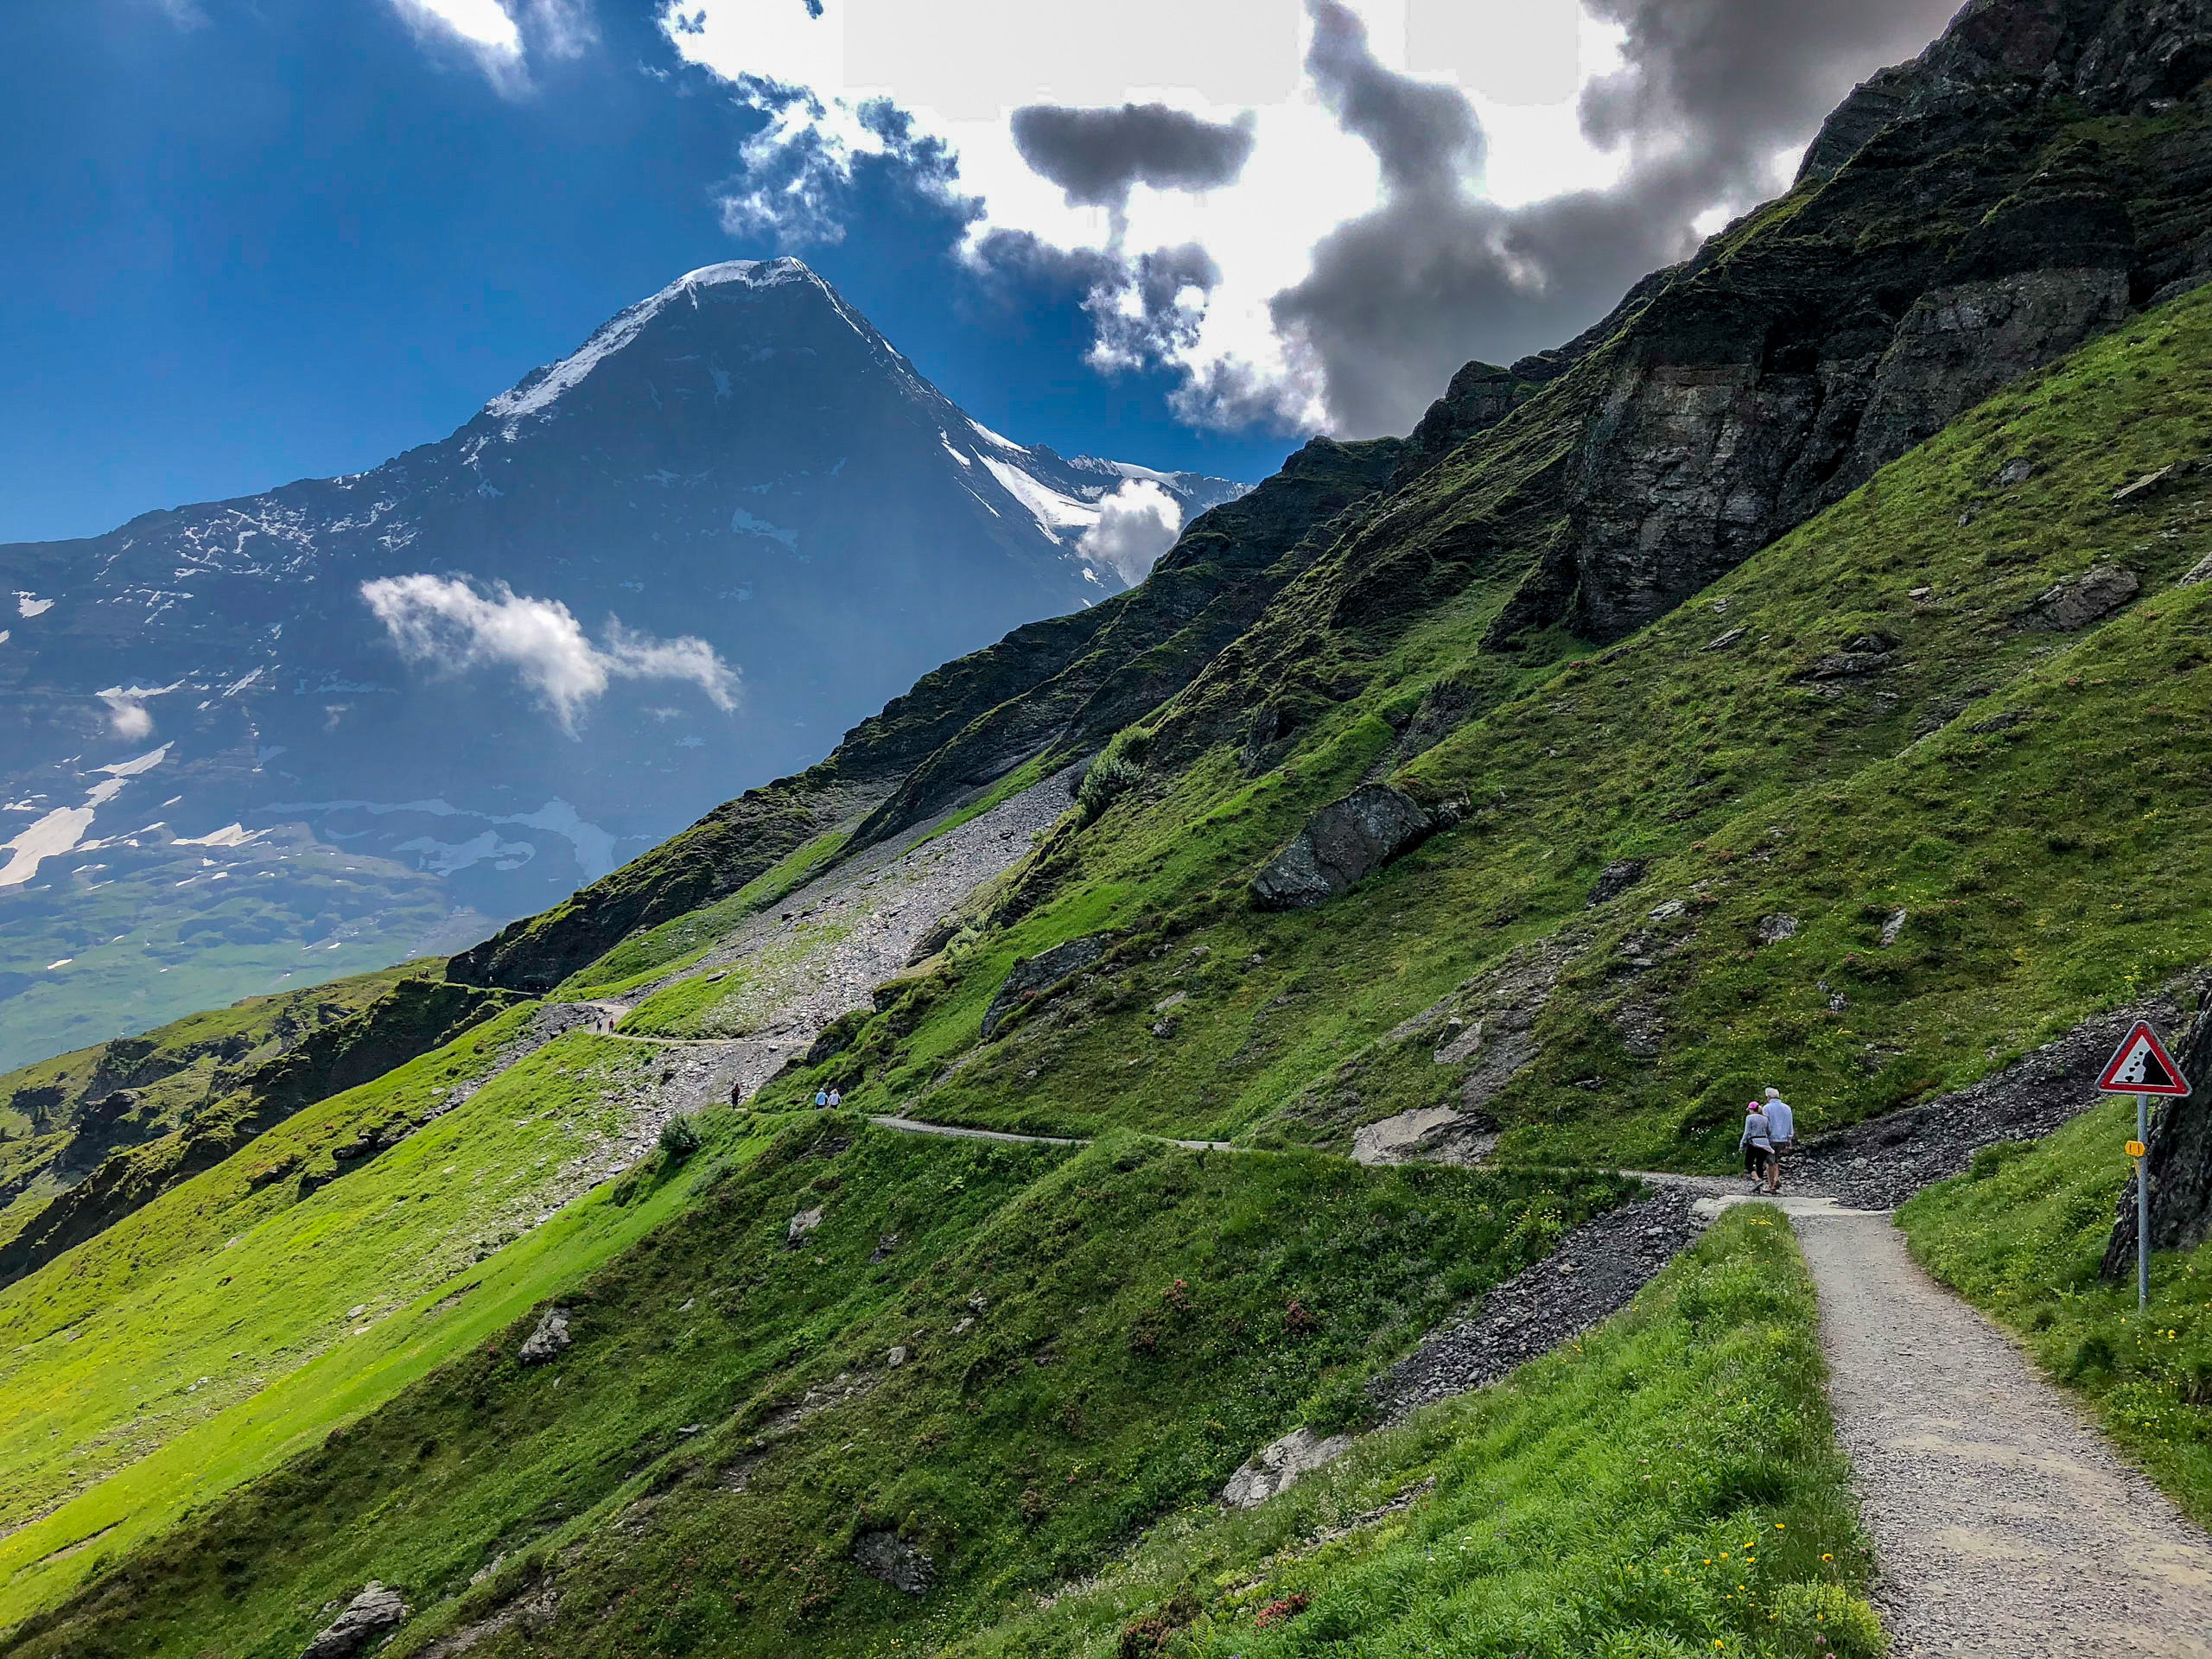 Day 2: Kleine Scheidegg and the Eiger Trail